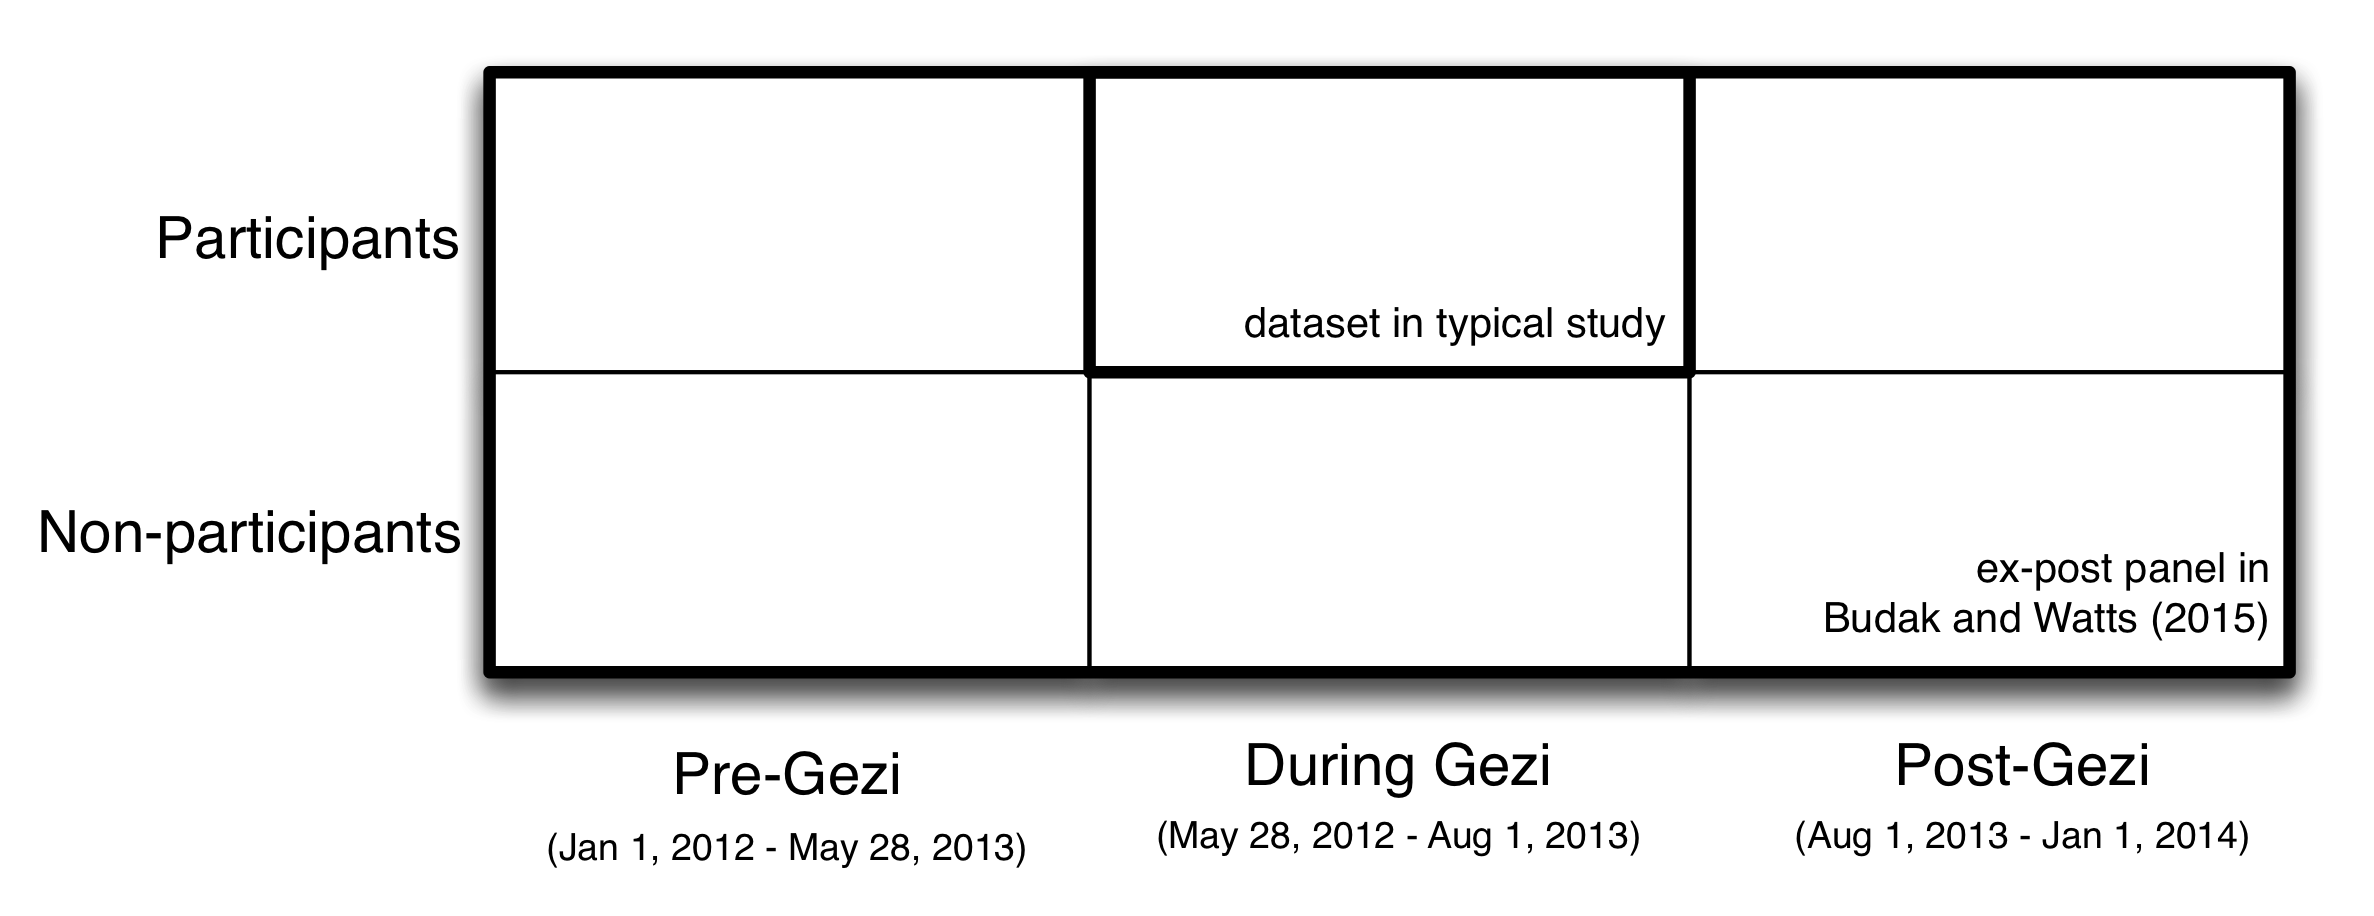 รูปที่ 2.1: การออกแบบใช้โดย Budak และวัตต์ (2015) เพื่อศึกษาครอบครองประท้วง Gezi ในประเทศตุรกีในช่วงฤดู​​ร้อนของปี 2013 โดยใช้ธรรมชาติเสมอบนทวิตเตอร์ของนักวิจัยที่สร้างสิ่งที่พวกเขาเรียกว่าแผงอดีตโพสต์ที่เกี่ยวกับการรวม 30,000 คนกว่าสองปี ในทางตรงกันข้ามการศึกษาทั่วไปที่มุ่งเน้นไปที่ผู้เข้าร่วมในระหว่างการประท้วงที่แผงอดีตโพสต์เพิ่ม 1) ข้อมูลจากผู้เข้าร่วมก่อนและหลังเหตุการณ์และ 2) ข้อมูลจากการไม่เข้าร่วมก่อนระหว่างและหลังจากเหตุการณ์ โครงสร้างข้อมูลนี้อุดมเปิดการใช้งาน Budak และวัตต์ที่จะประเมินสิ่งที่ชนิดของผู้คนมีแนวโน้มที่จะมีส่วนร่วมในการประท้วง Gezi และเพื่อประเมินการเปลี่ยนแปลงในทัศนคติของผู้เข้าร่วมและผู้เข้าร่วมที่ไม่ใช่ทั้งในระยะสั้น (เปรียบเทียบก่อน Gezi ไปในช่วง Gezi) และระยะยาว (เปรียบเทียบก่อน Gezi ที่จะโพสต์ Gezi)